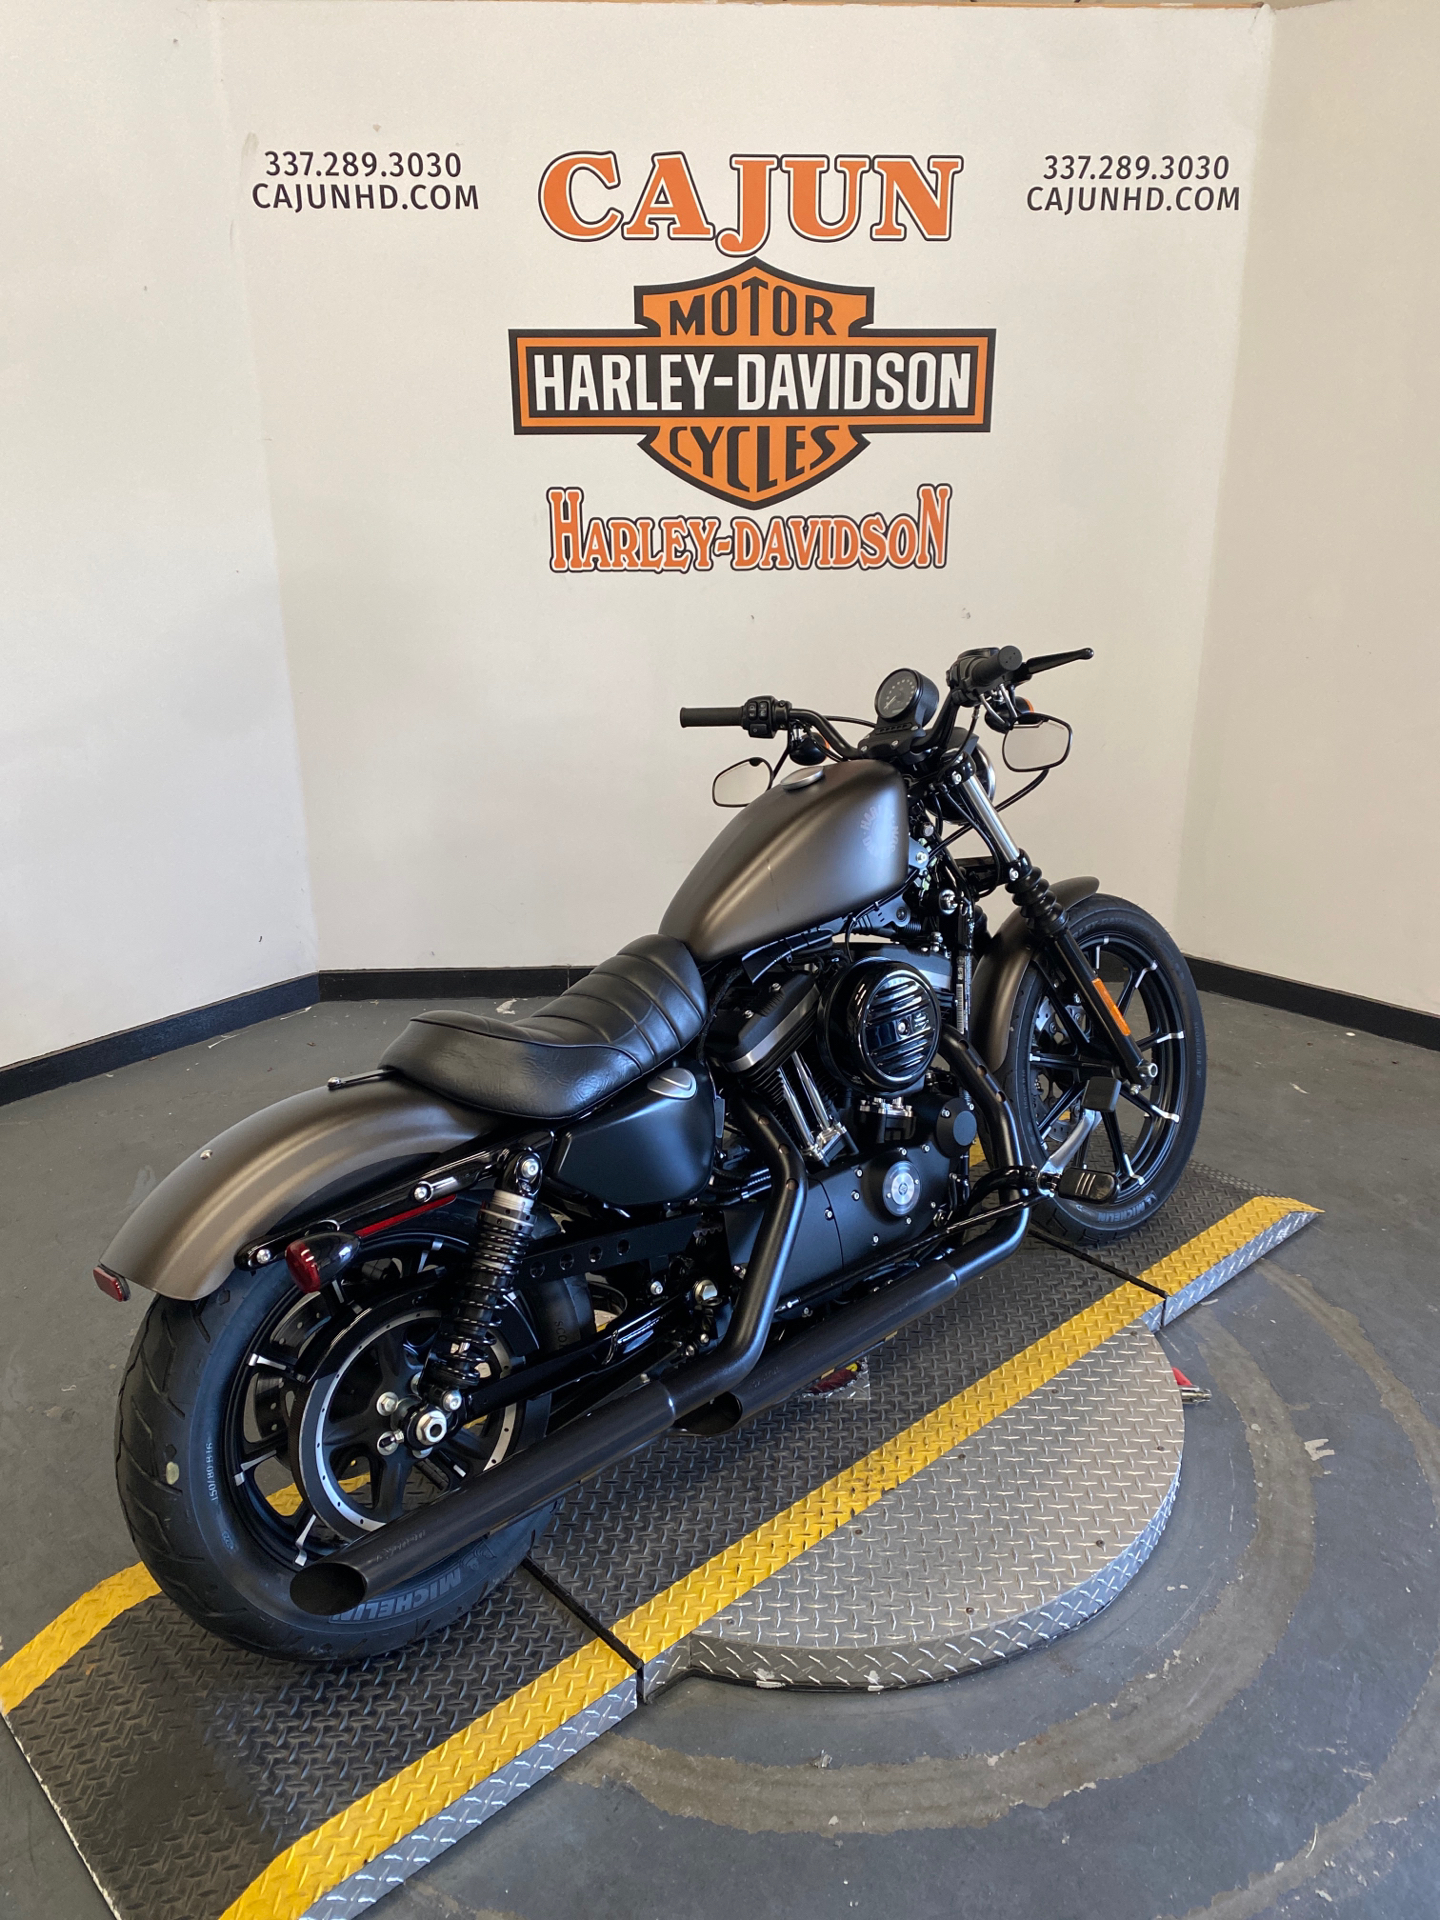 2021 Harley-Davidson Iron 883 near me - Photo 7